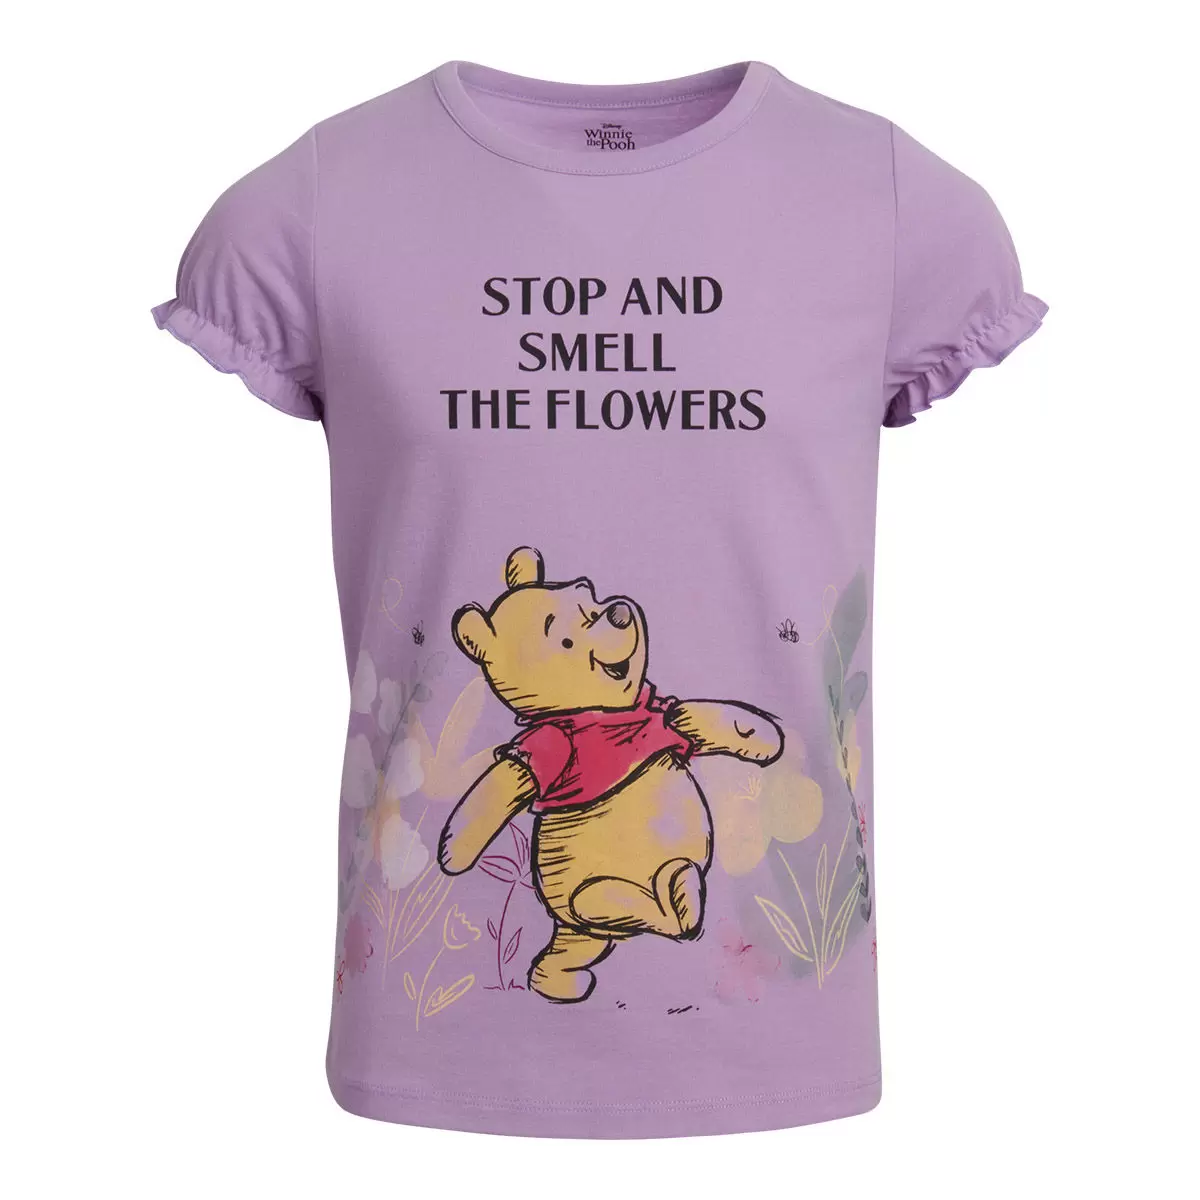 兒童卡通圖案短袖上衣四件組 Winnie the Pooh 3T